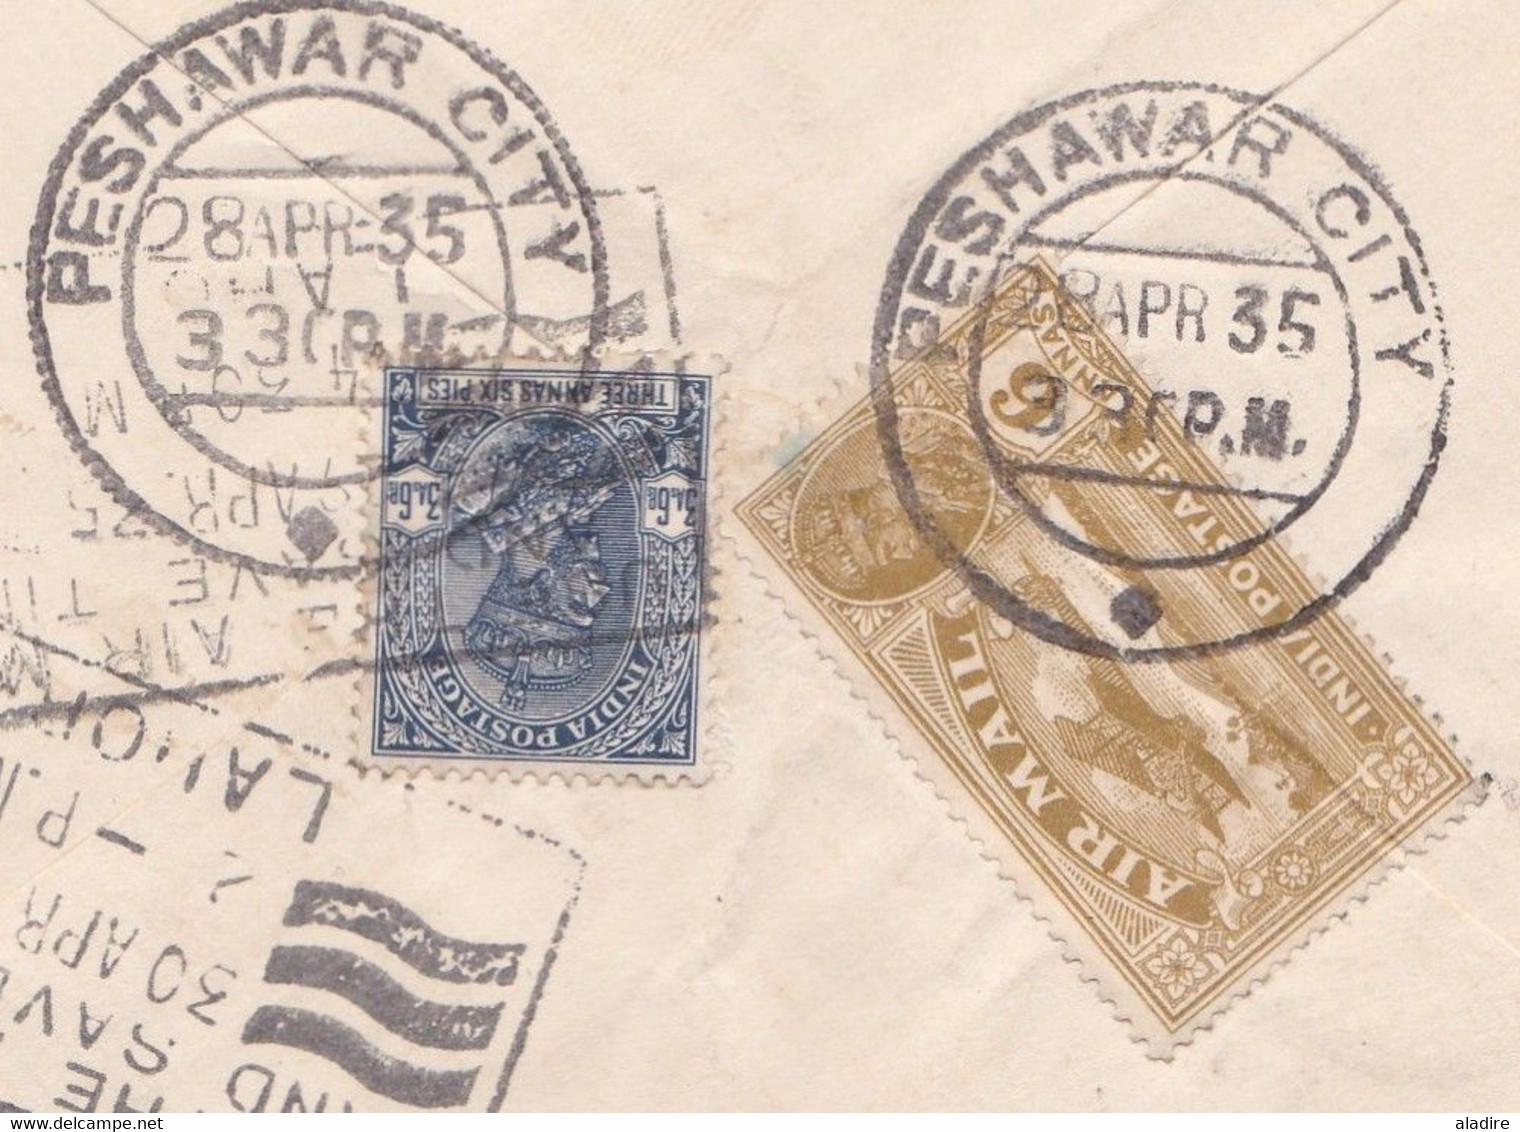 1935 - Enveloppe PAR AVION De PESHAWAR Vers WEISENBURG, Allemagne - USE THE AIR MAIL Ad - 1911-35 Koning George V